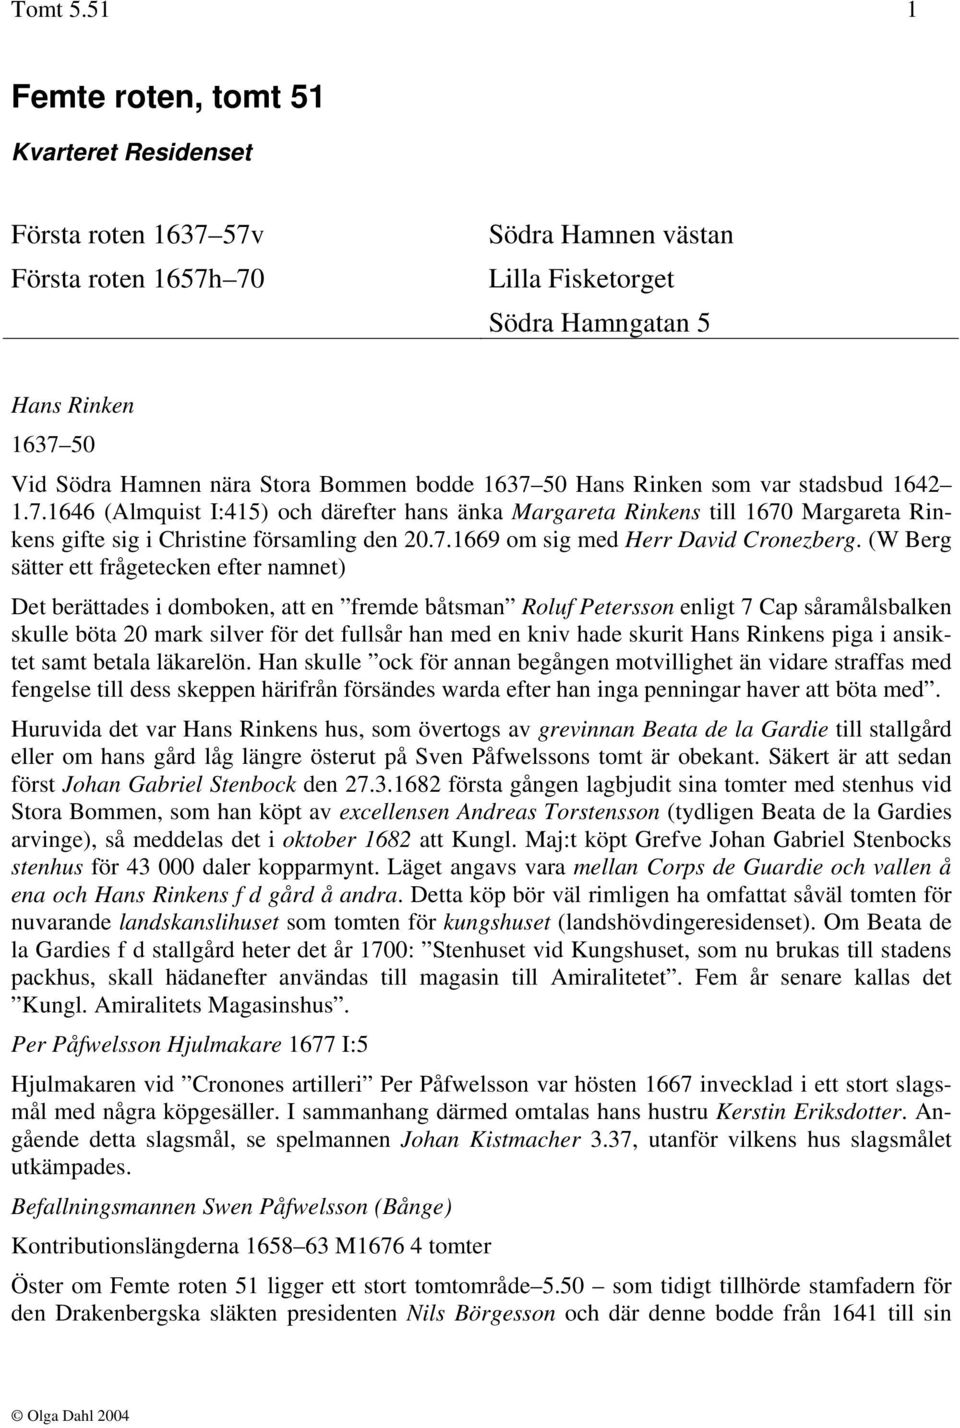 Bommen bodde 1637 50 Hans Rinken som var stadsbud 1642 1.7.1646 (Almquist I:415) och därefter hans änka Margareta Rinkens till 1670 Margareta Rinkens gifte sig i Christine församling den 20.7.1669 om sig med Herr David Cronezberg.